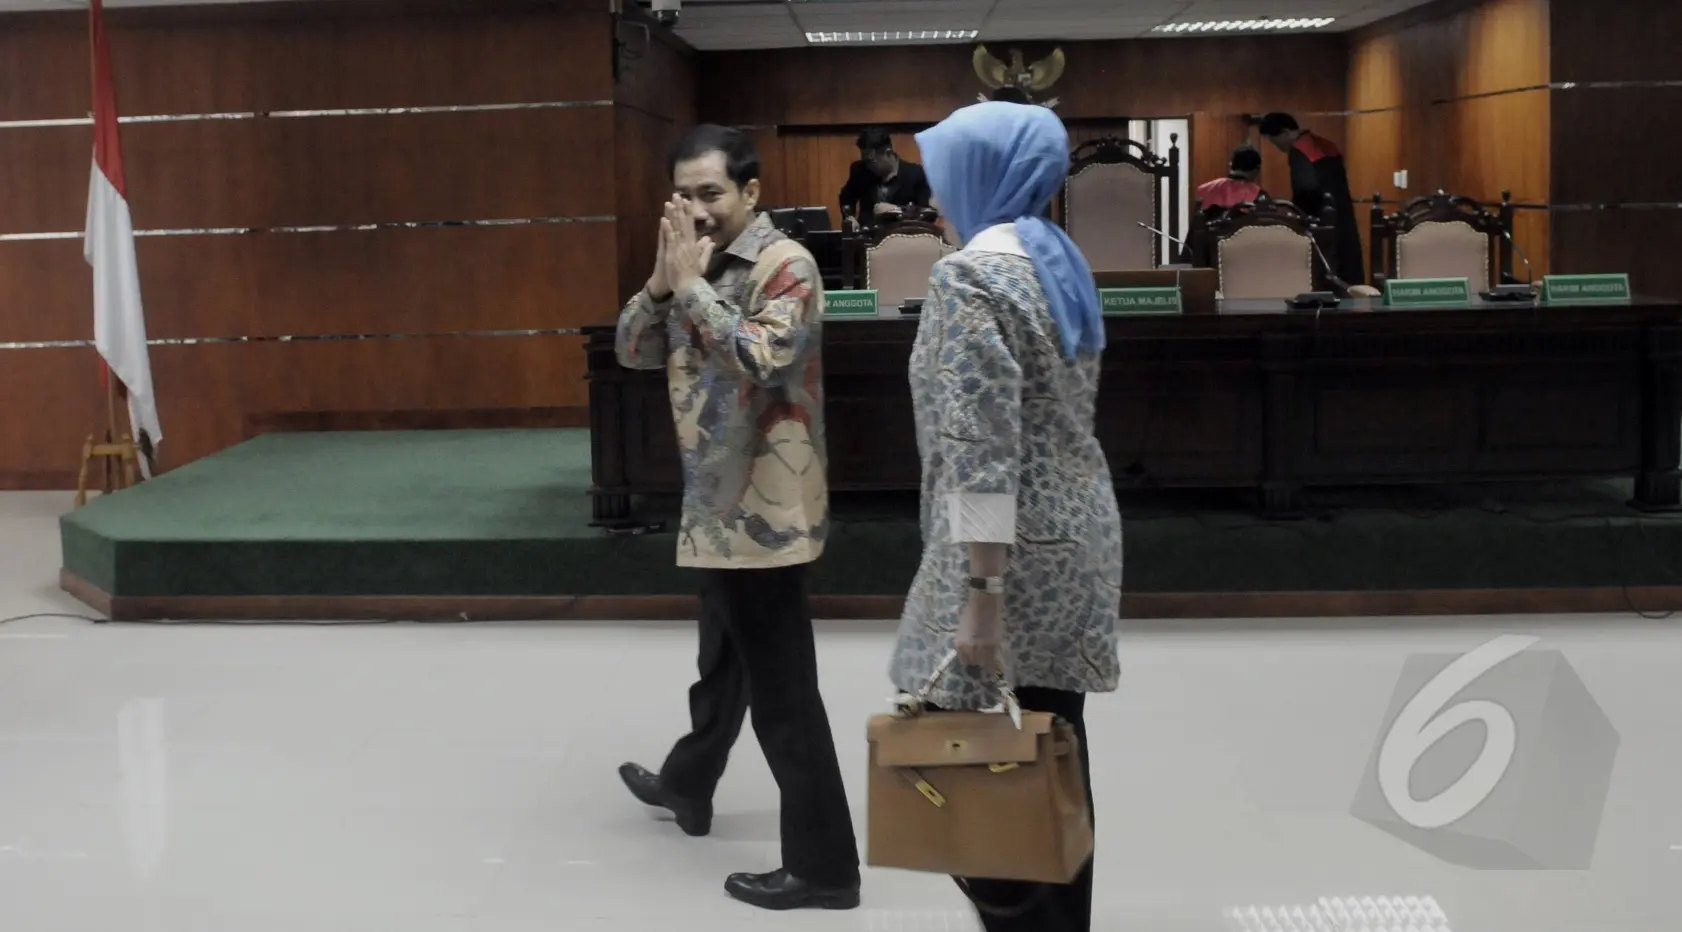 Hakim memberikan vonis karena Romi Herton dan istri terbukti menyuap Akil Mochtar, Pengadilan Tipikor, Jakarta, Senin (9/3/2015). (Liputan6.com/Andrian M Tunay)